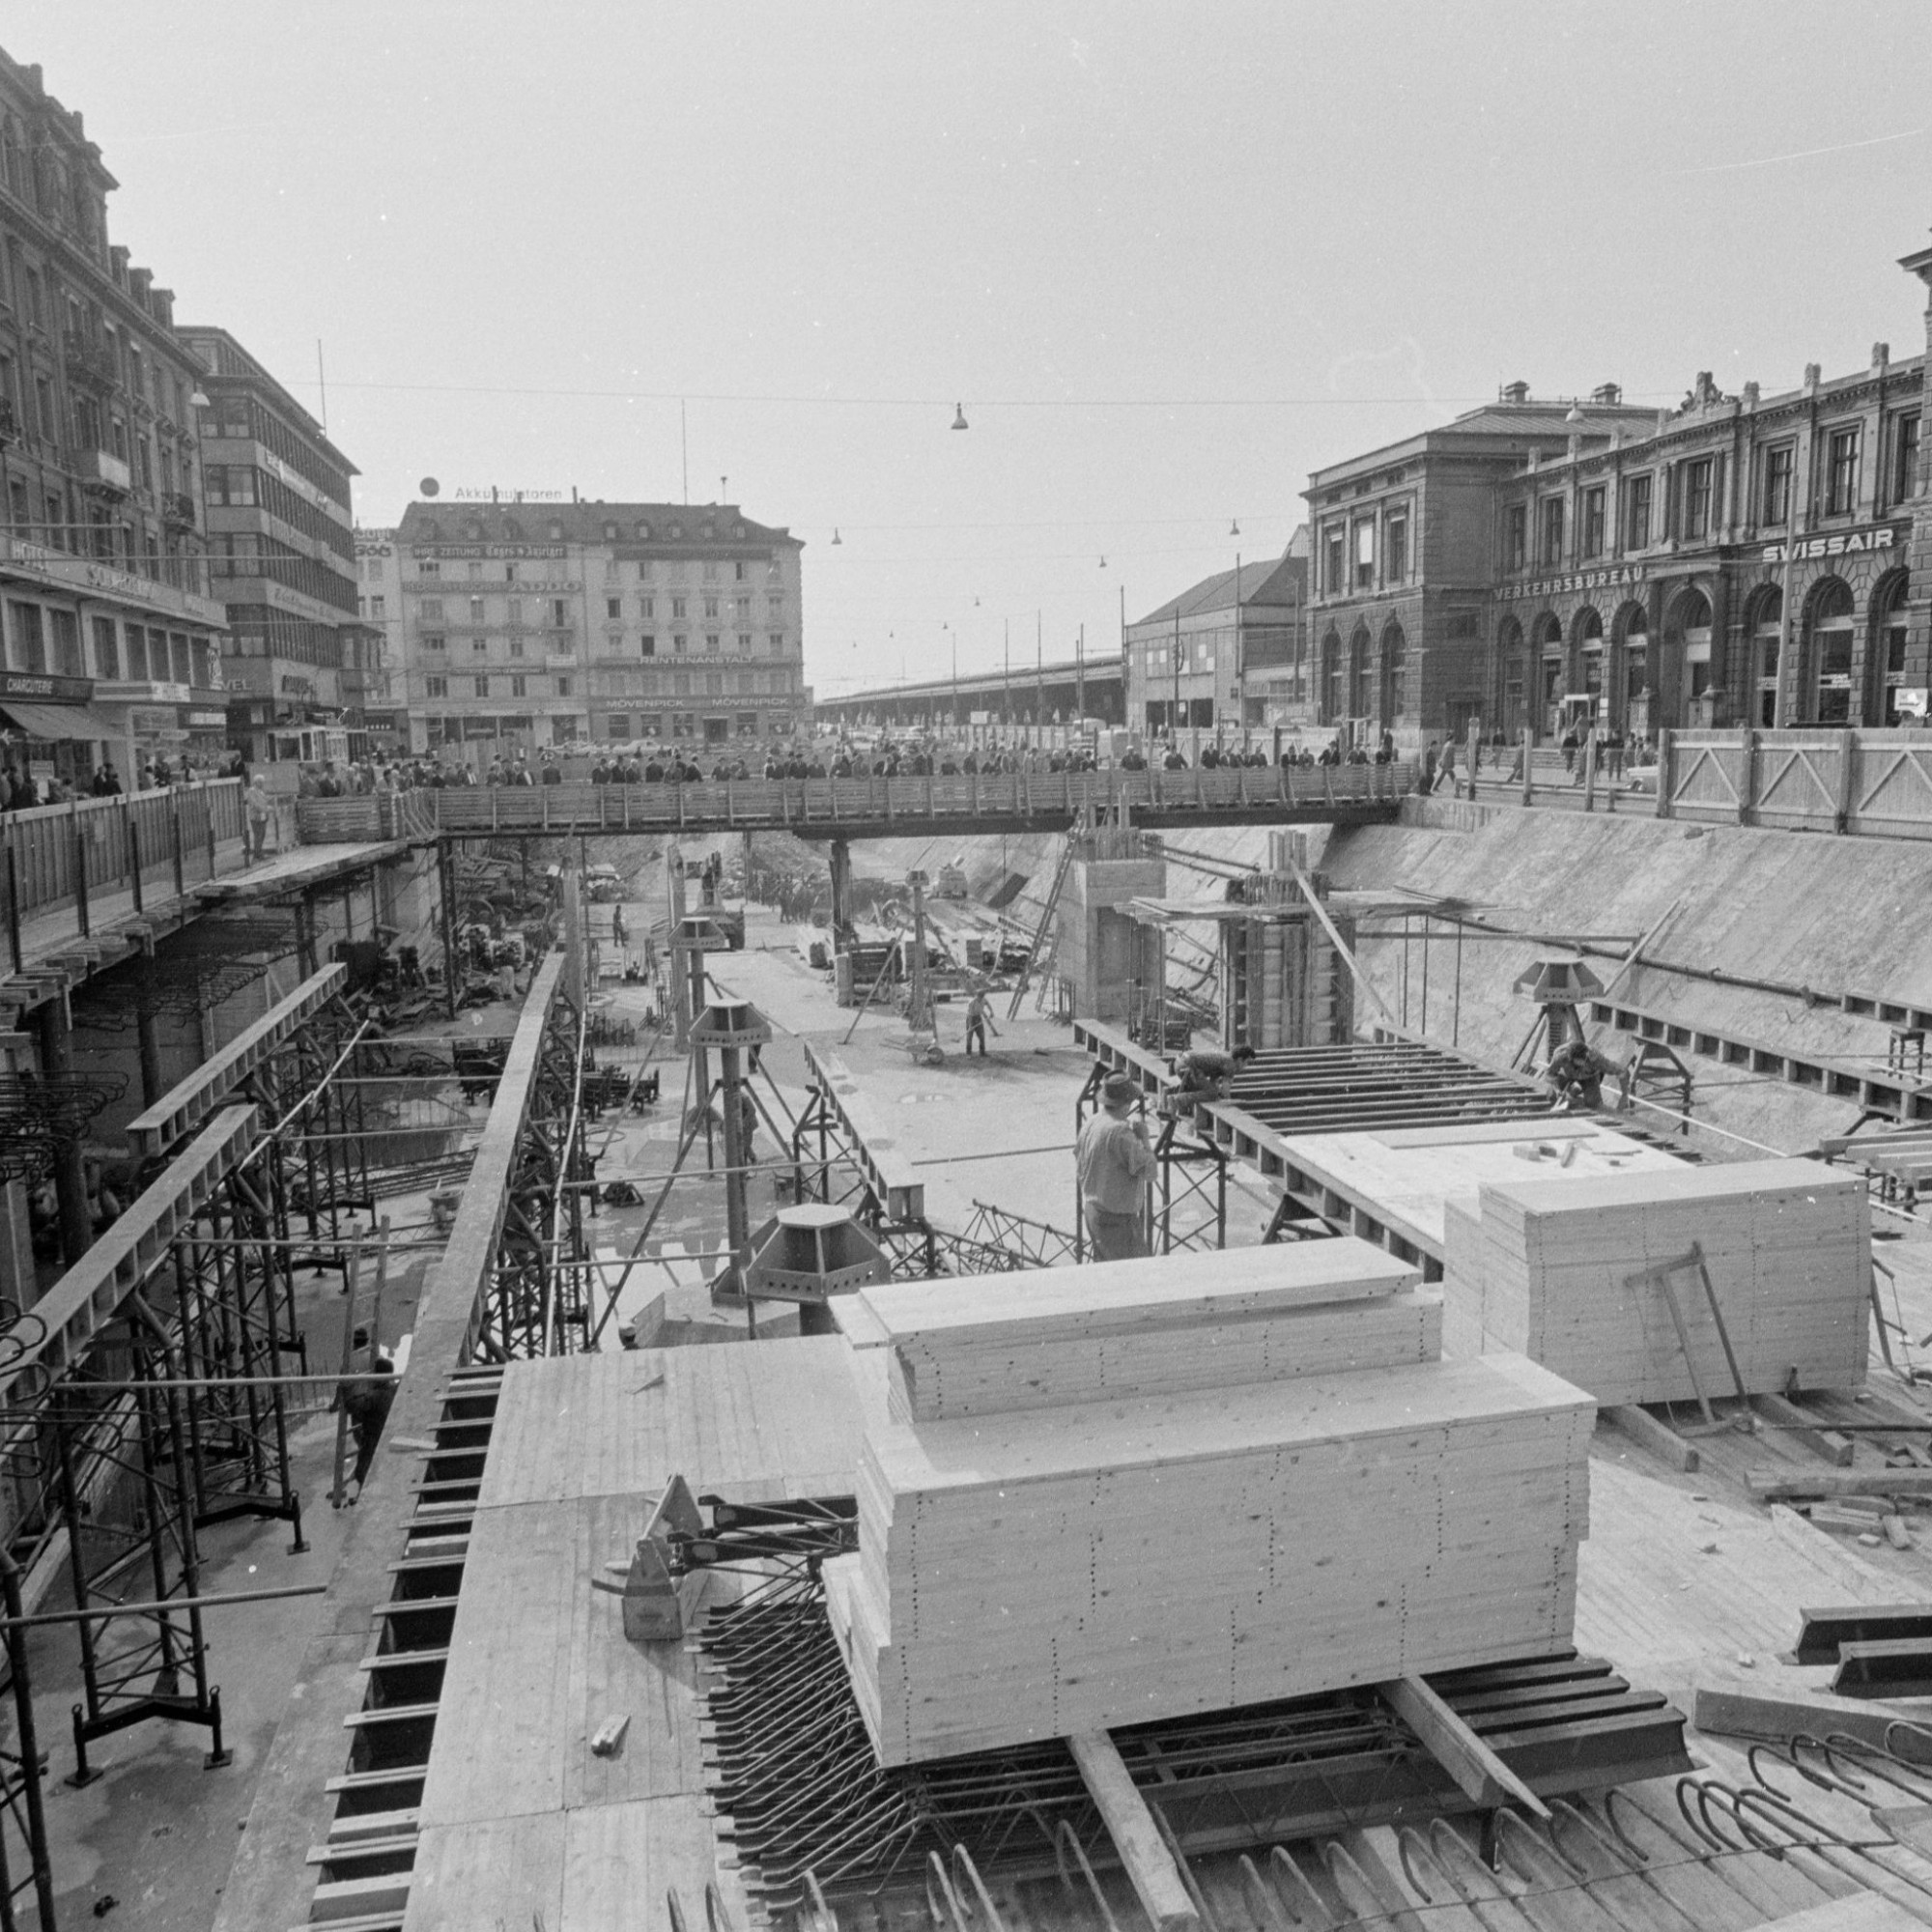 Darauf klaffte mitten auf dem Bahnhofsplatz eine riesige Baugrube. Provisorische Strassen wurden am Rand es Platzes für den Verkehr eingerichtet. 